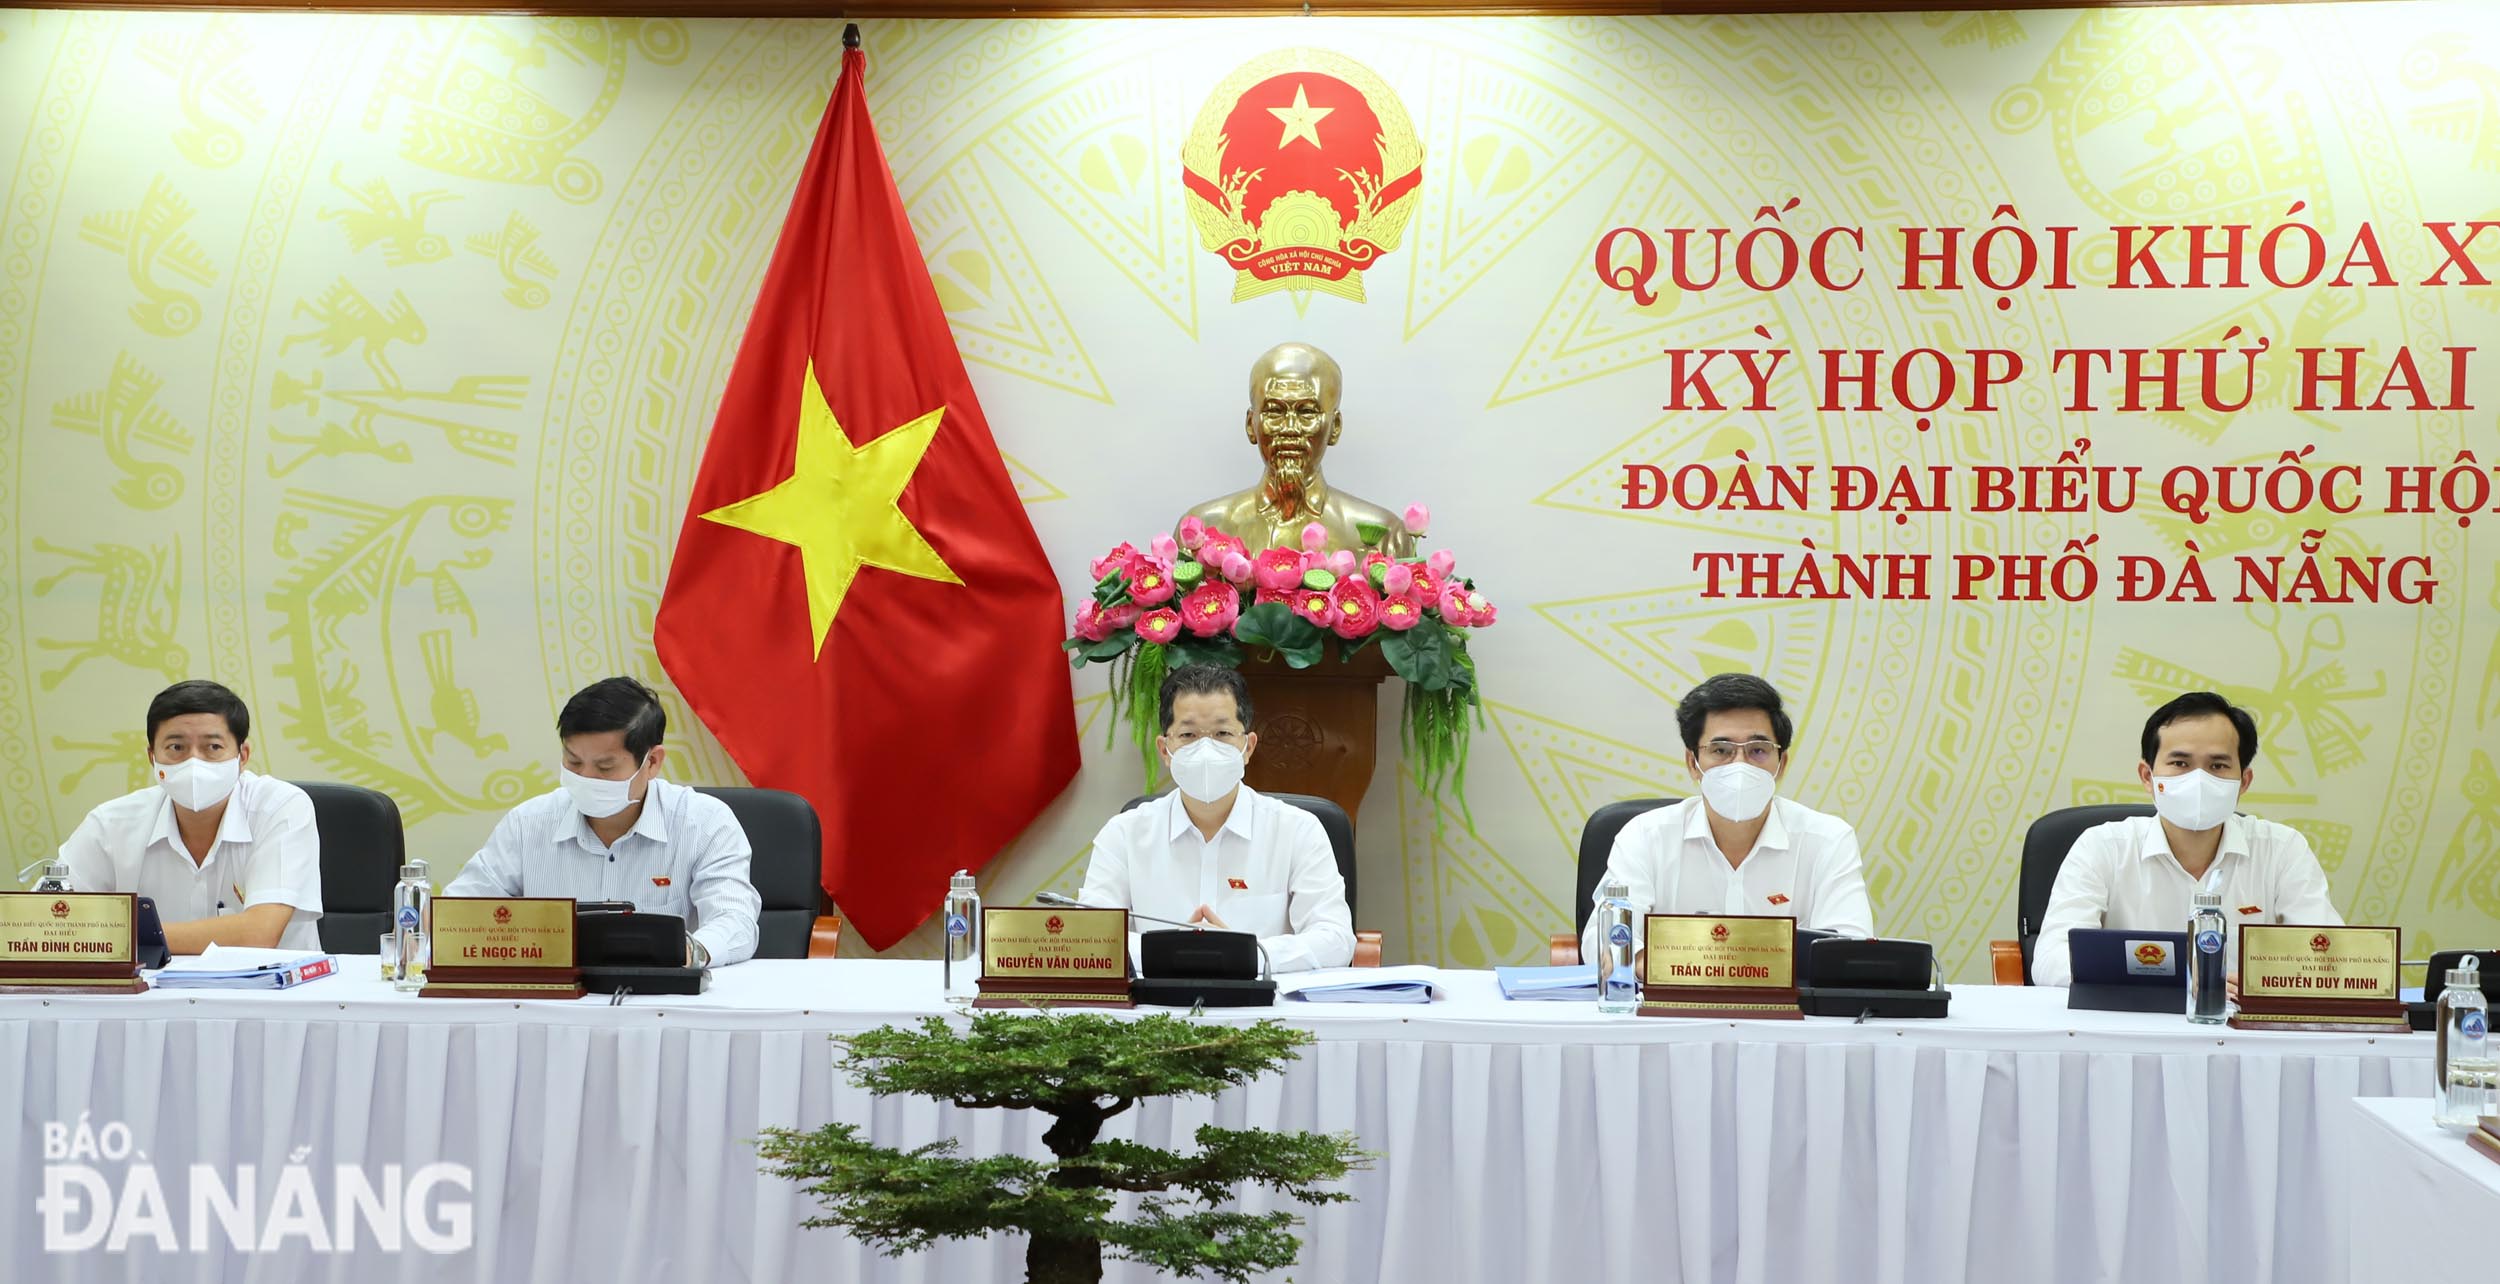 Bí thư Thành ủy Nguyễn Văn Quảng (giữa) cùng các đại biểu đoàn đại biểu thành phố dự phiên thảo luận trực tuyến sáng 28-10. Ảnh: NGỌC PHÚ